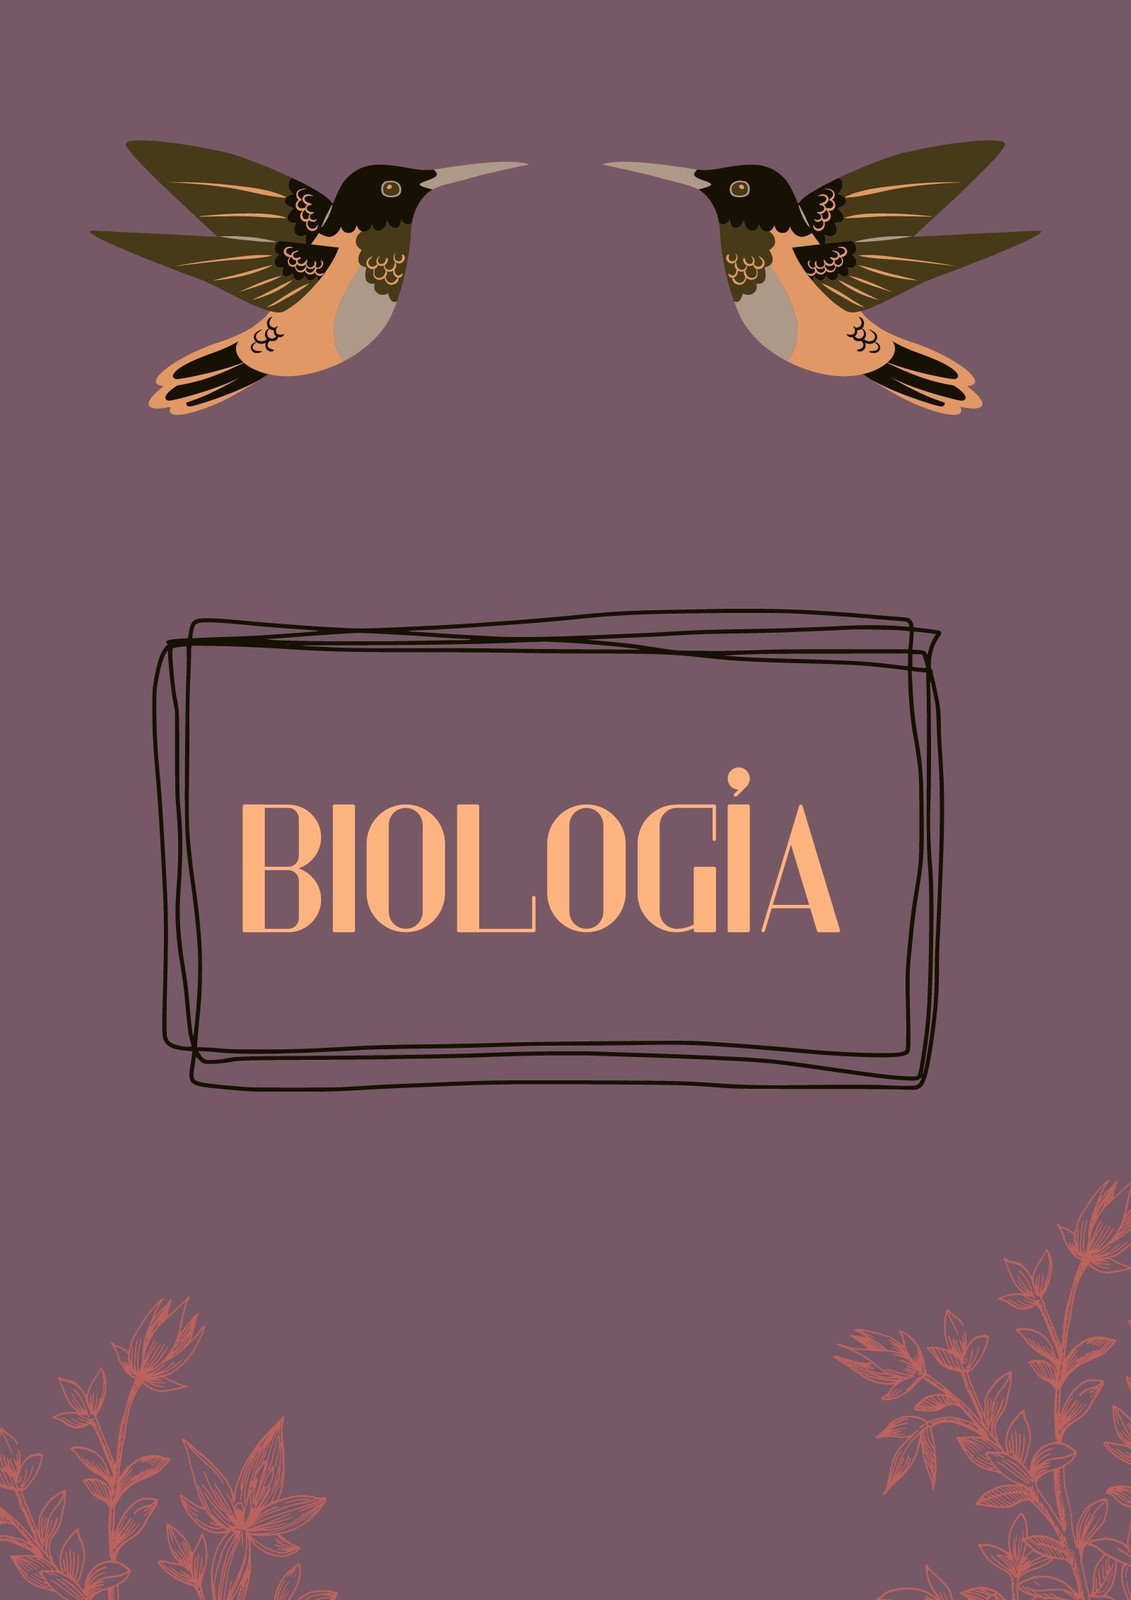 Plantillas biología - Gratis y editables - Canva